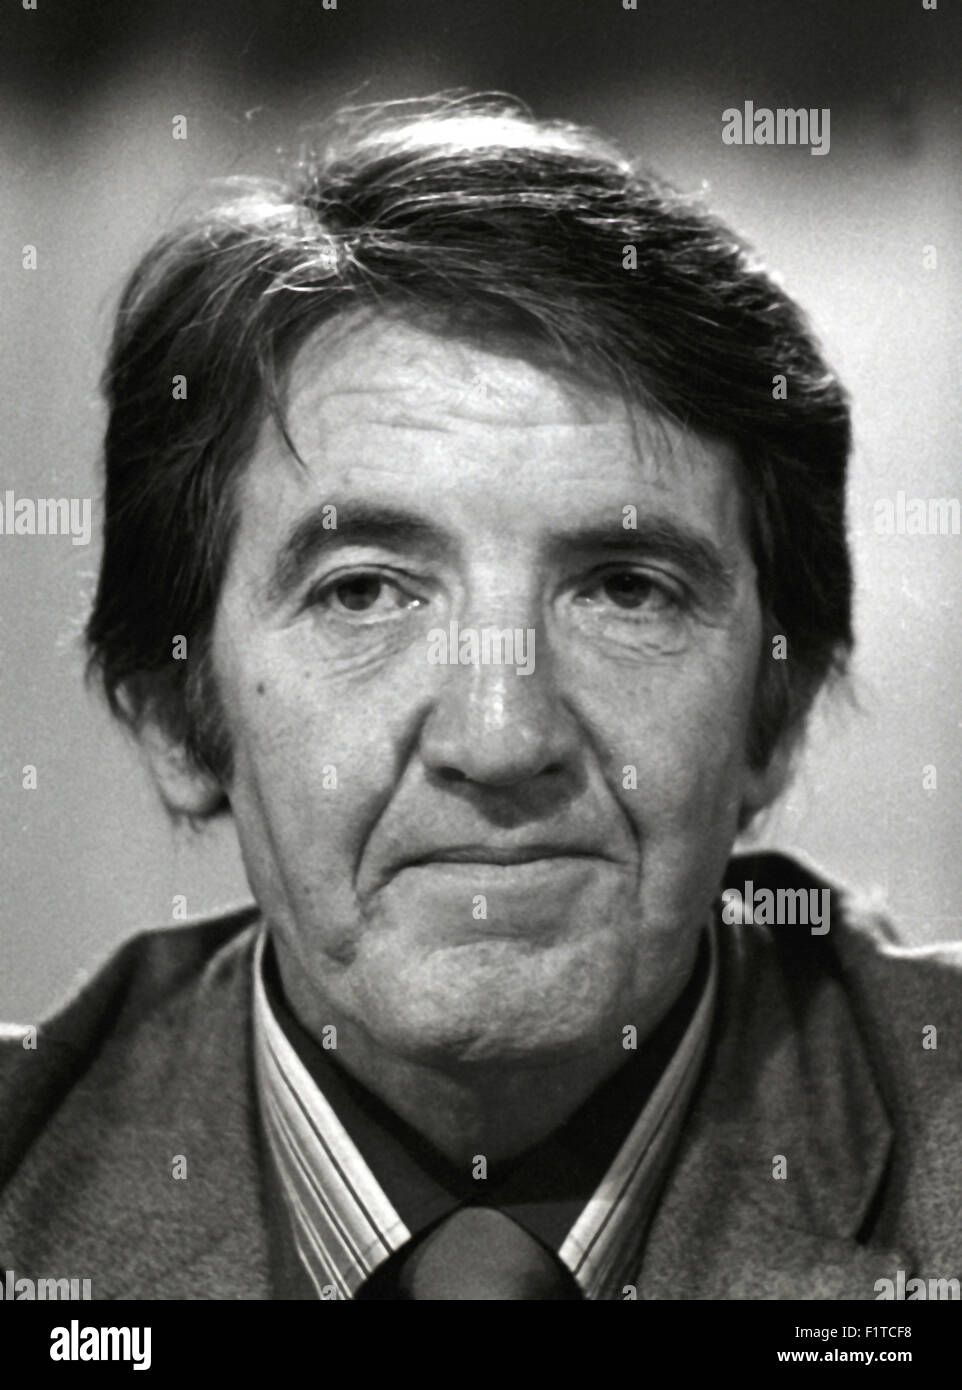 Dennis Skinner homme politique Député de Bolsover depuis 1970. Image 1984 Banque D'Images